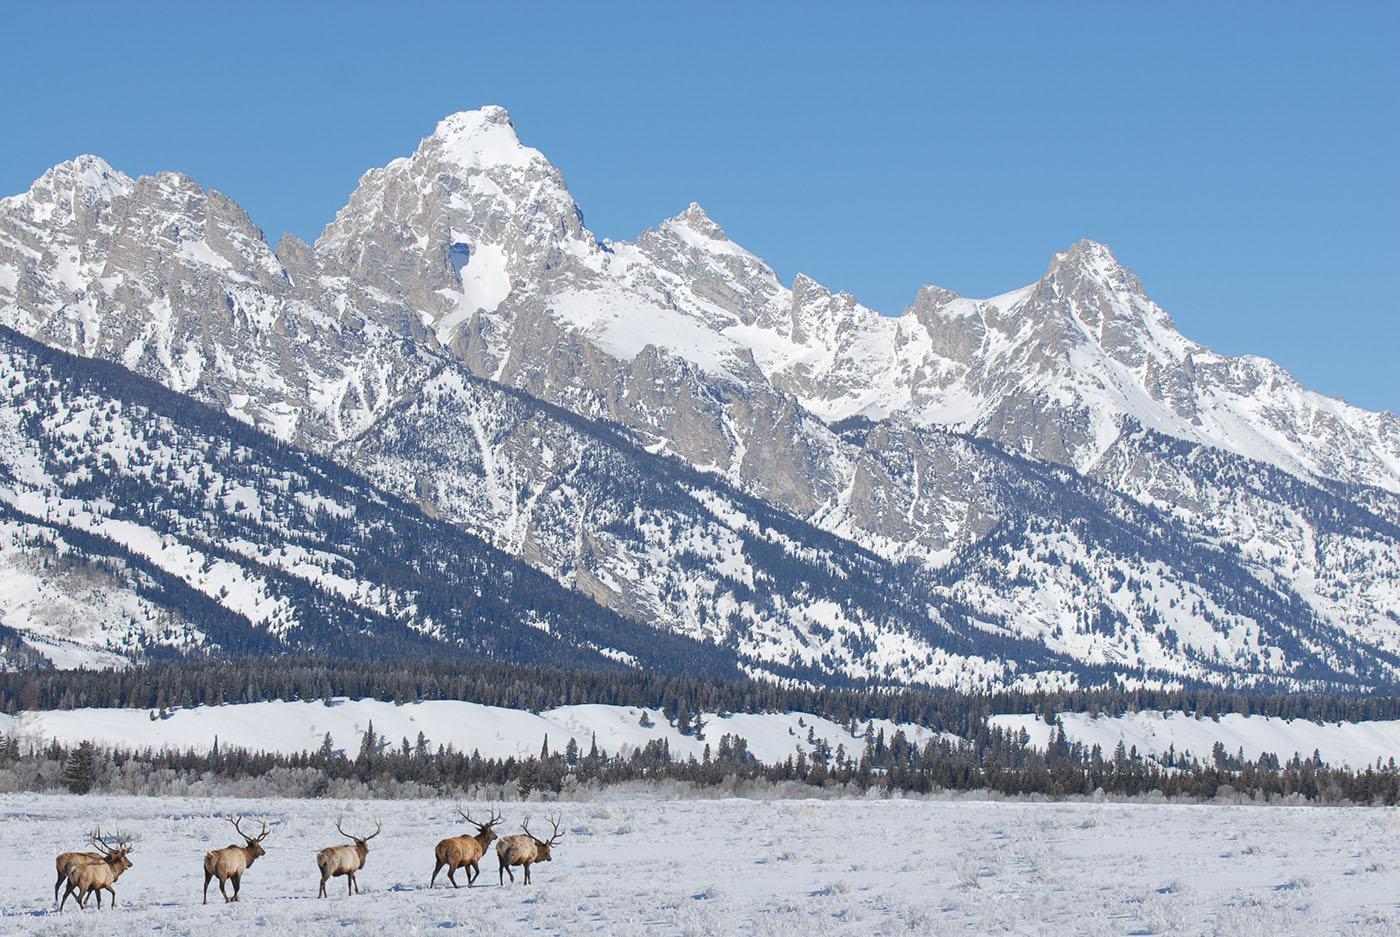 Bull elk in Grand Teton National Park. Photo: Kirk Geisler / shutterstock.com